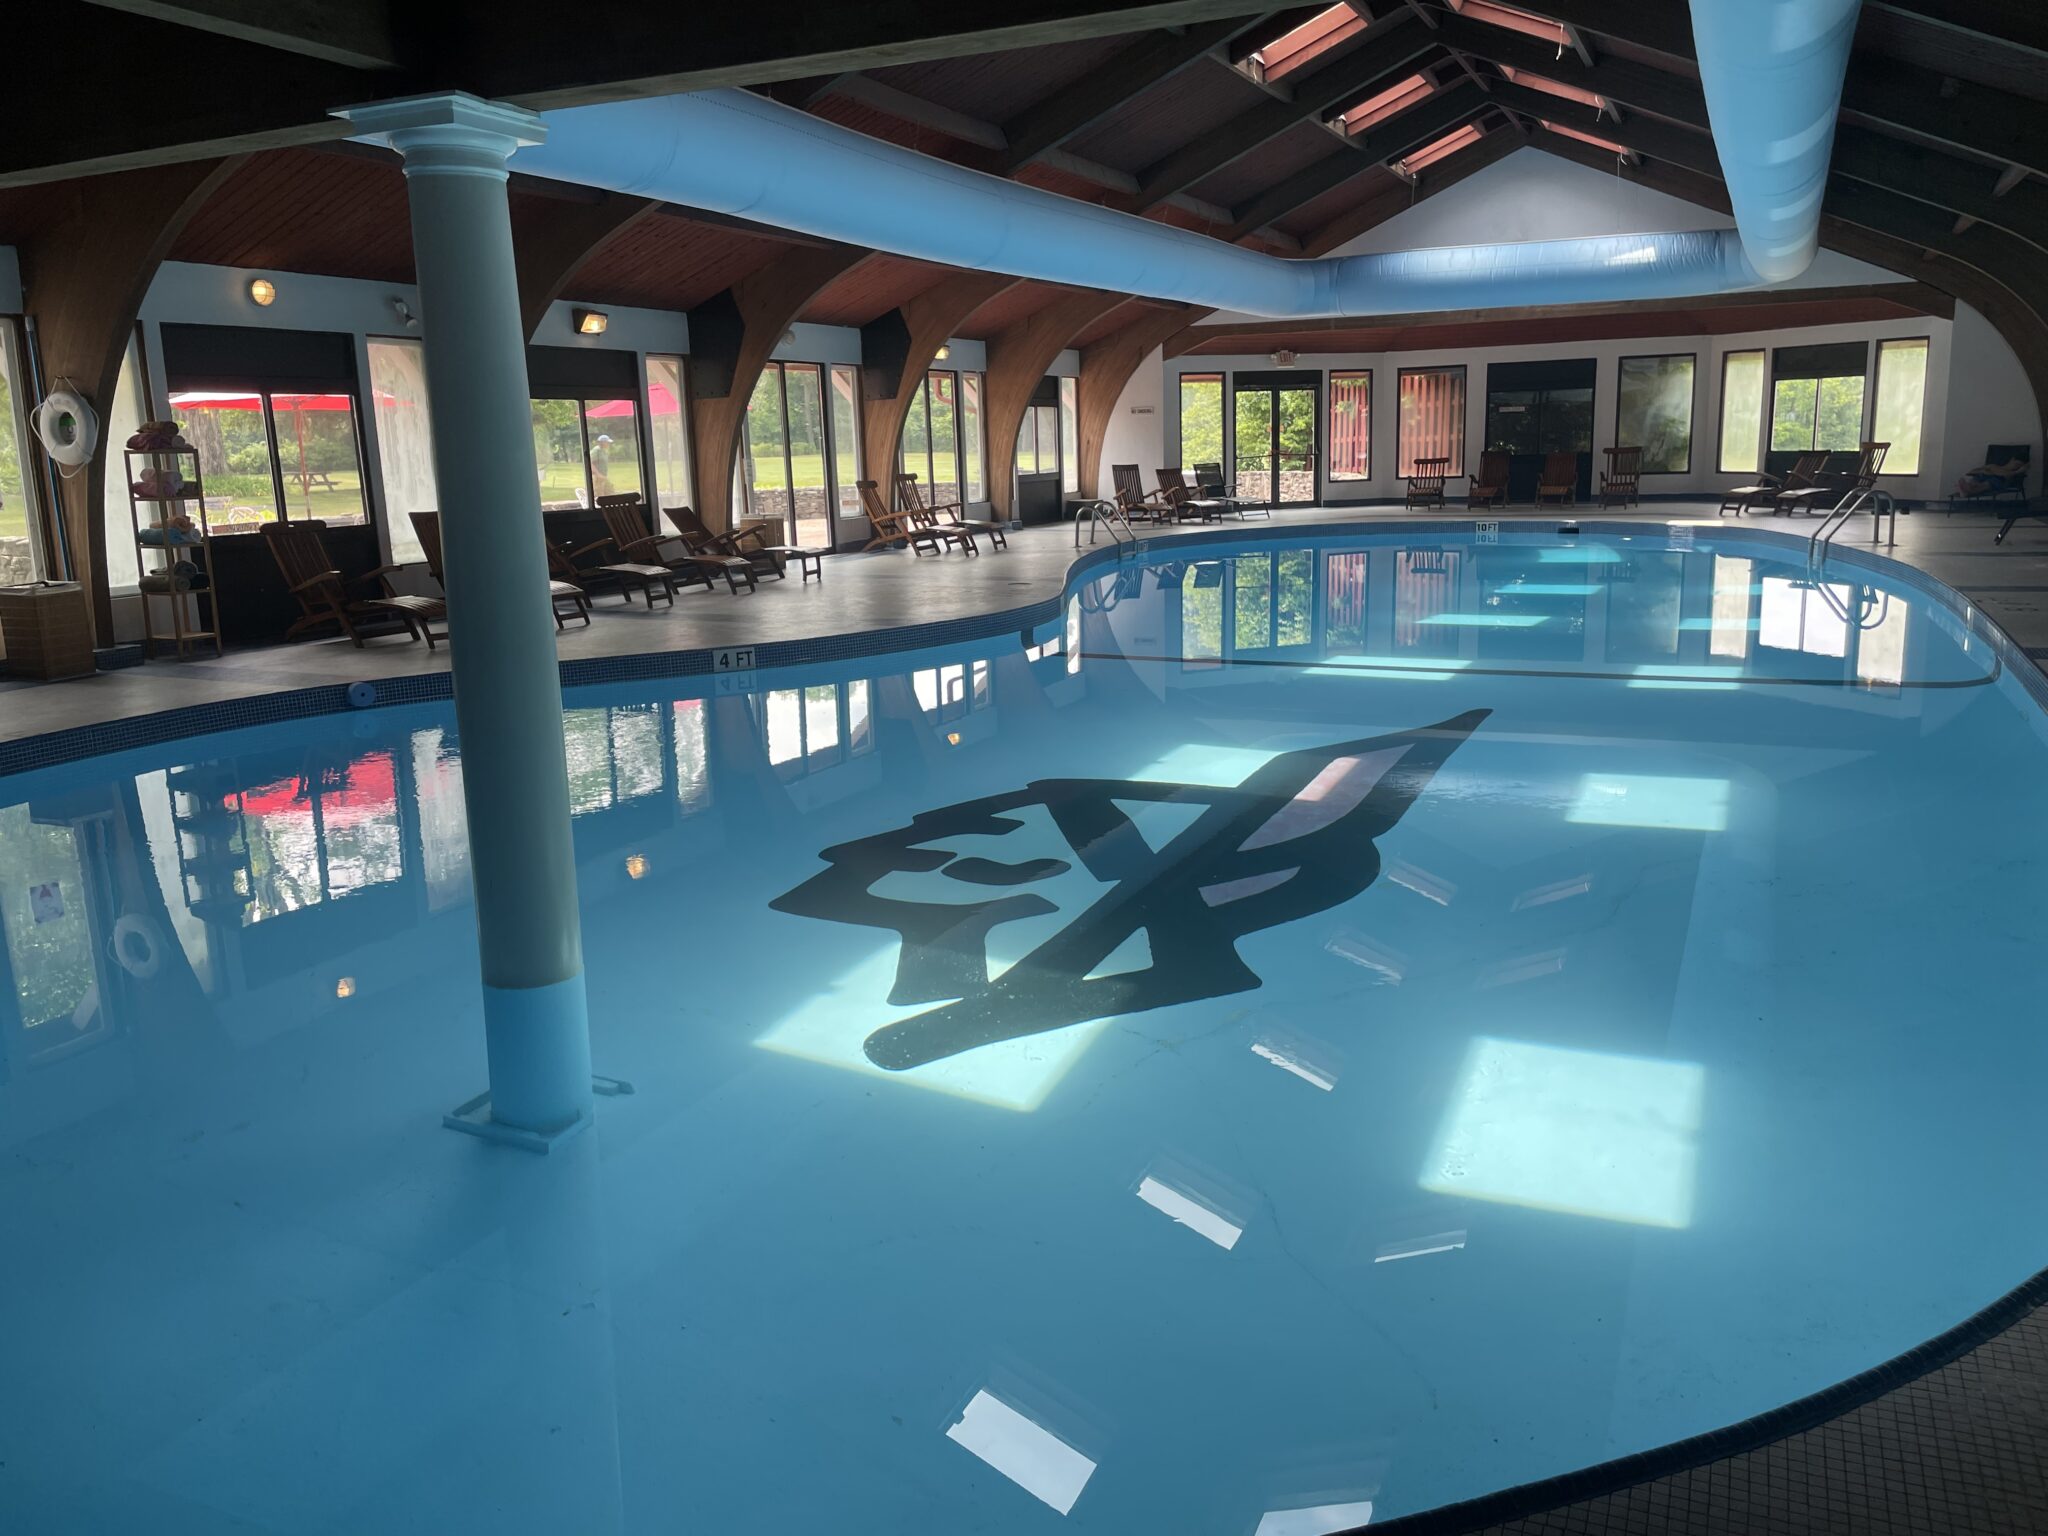 Shawnee Indoor Pool